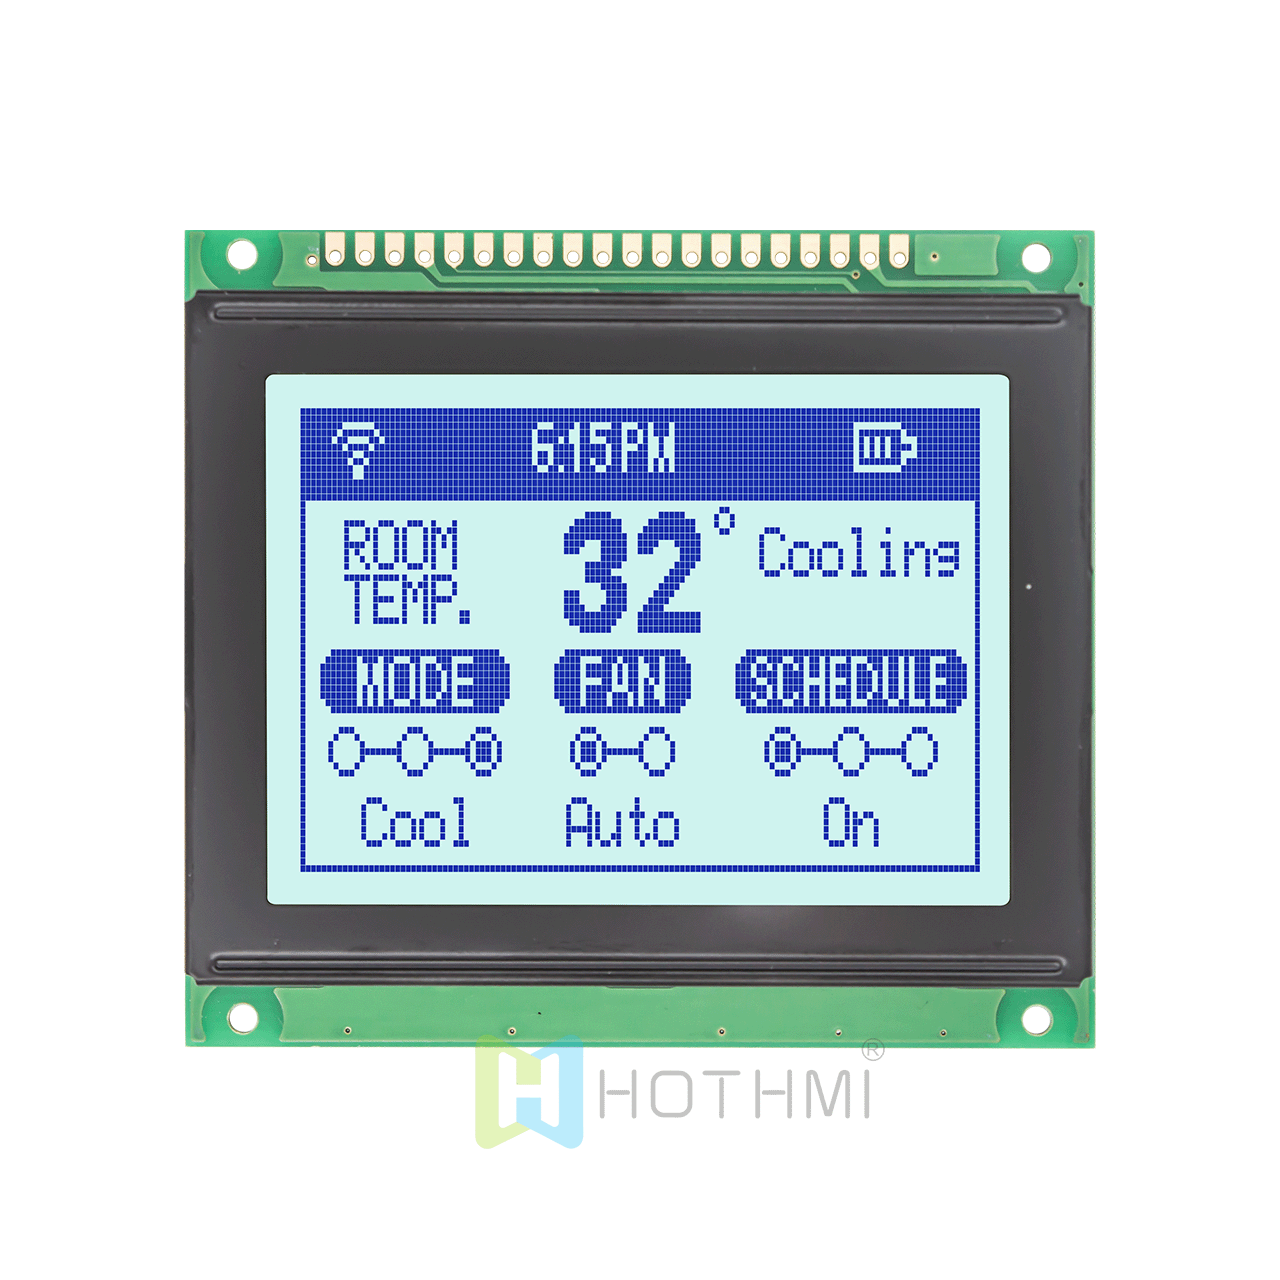 3 英寸 128x64 液晶显示屏 | 图形点阵显示| 兼容KS0108 | 灰色背景上的蓝色文本| Arduino